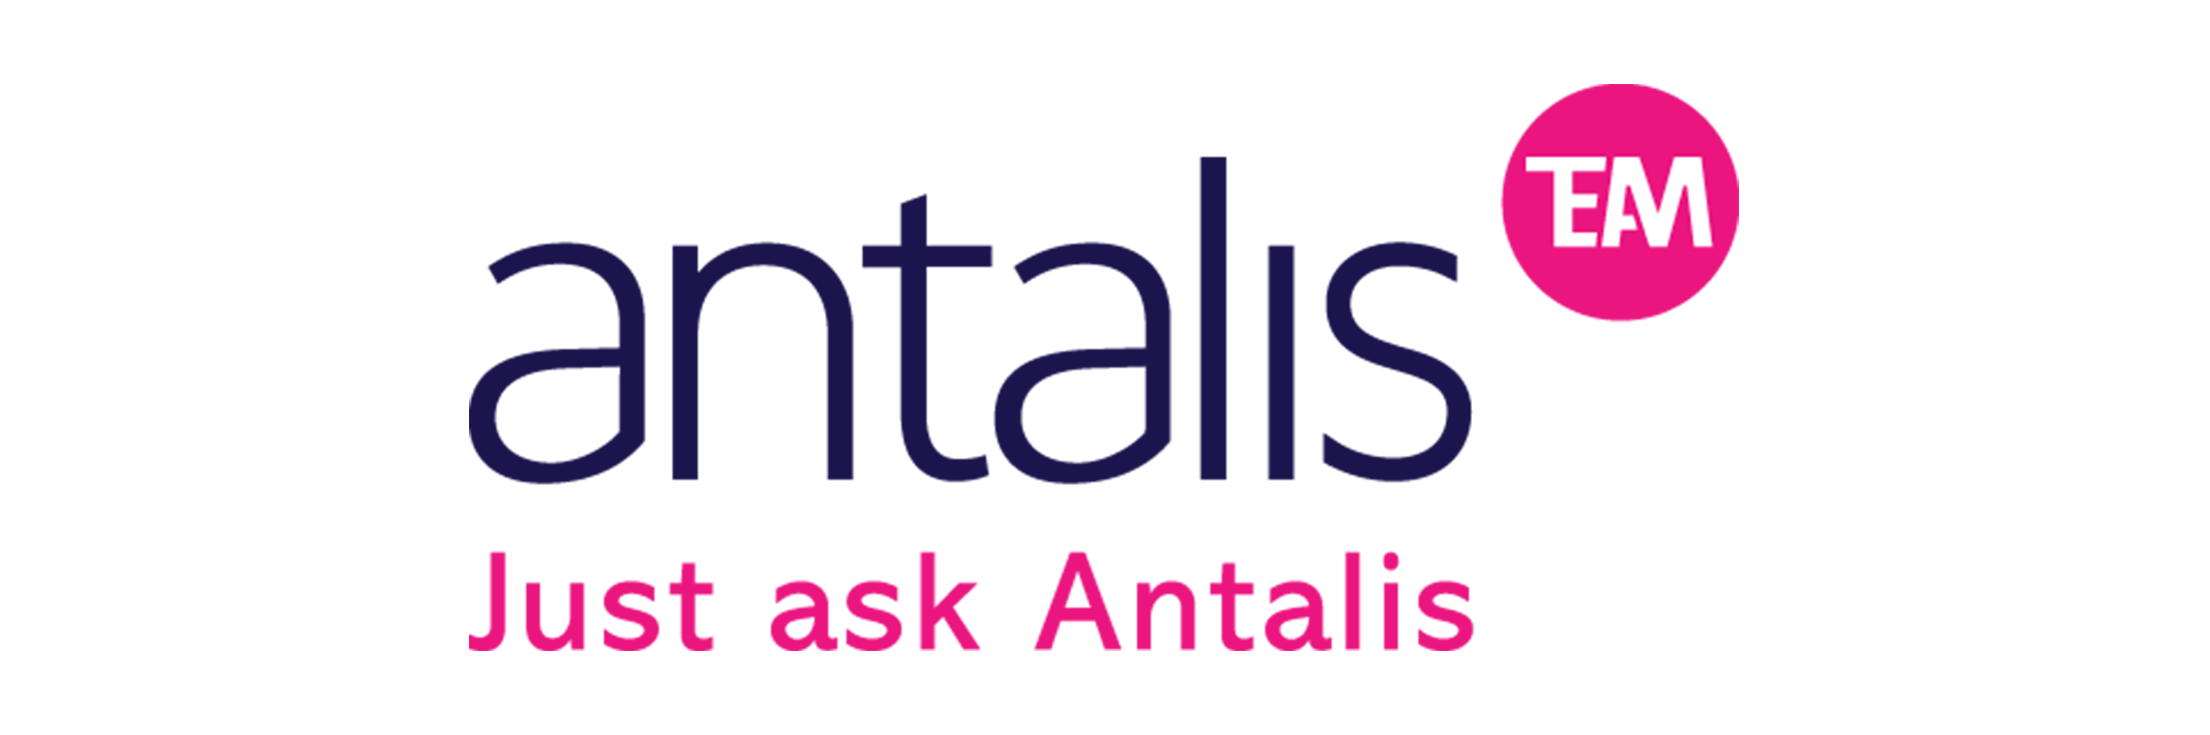 Antalis-logo